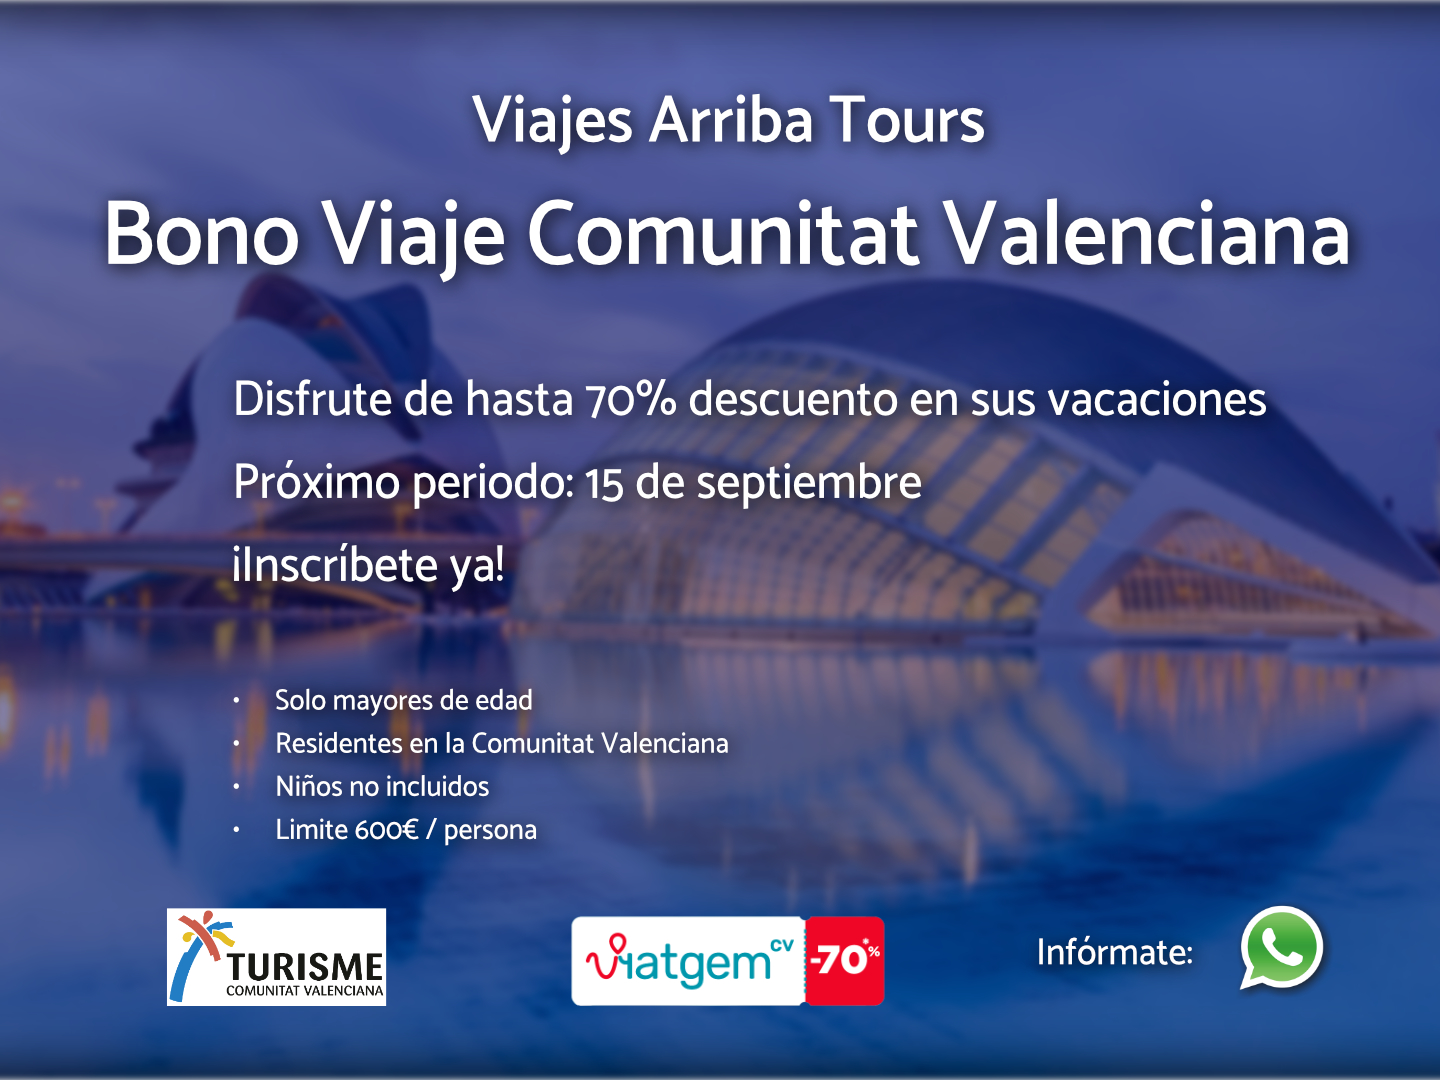 ¡Bono Viaje Valencia ofrece hasta 70% descuento!